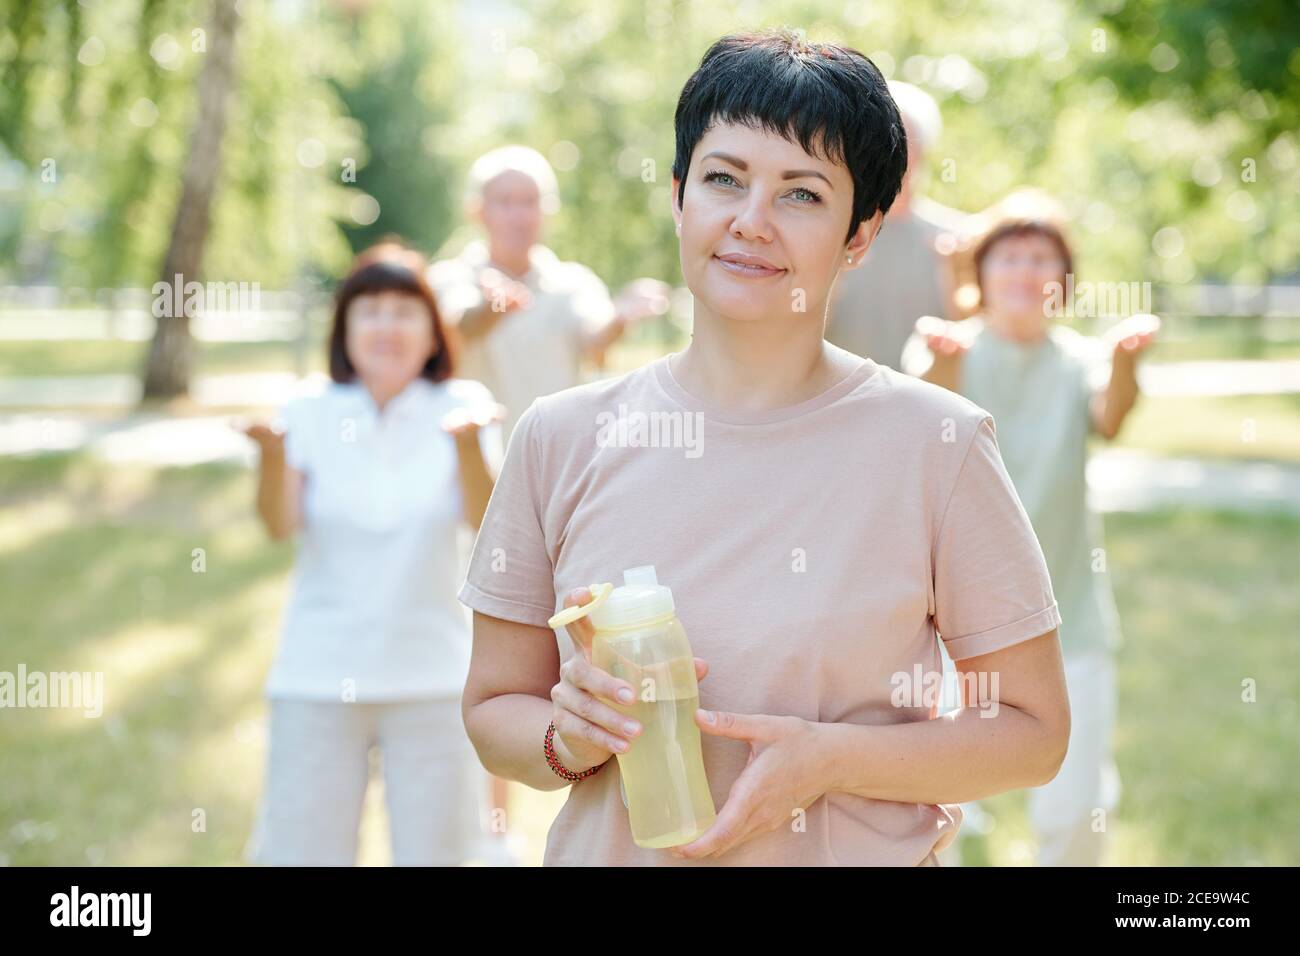 Ritratto di bruna sorridente allenatore fitness con capelli corti bottiglia d'acqua contro le persone anziane che fanno esercizio Foto Stock